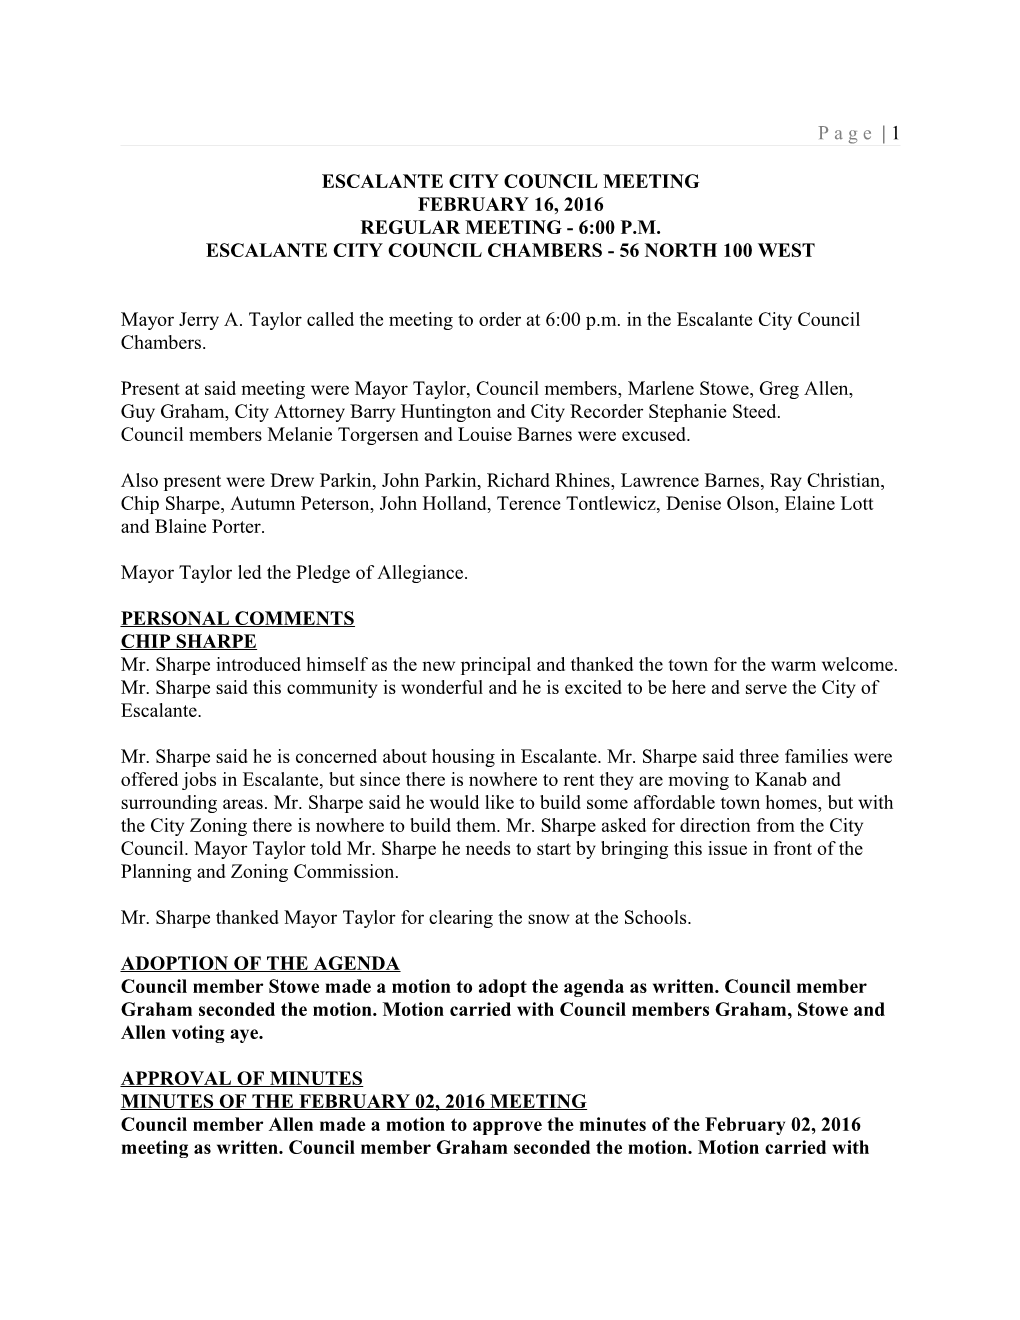 Escalante City Council Meeting